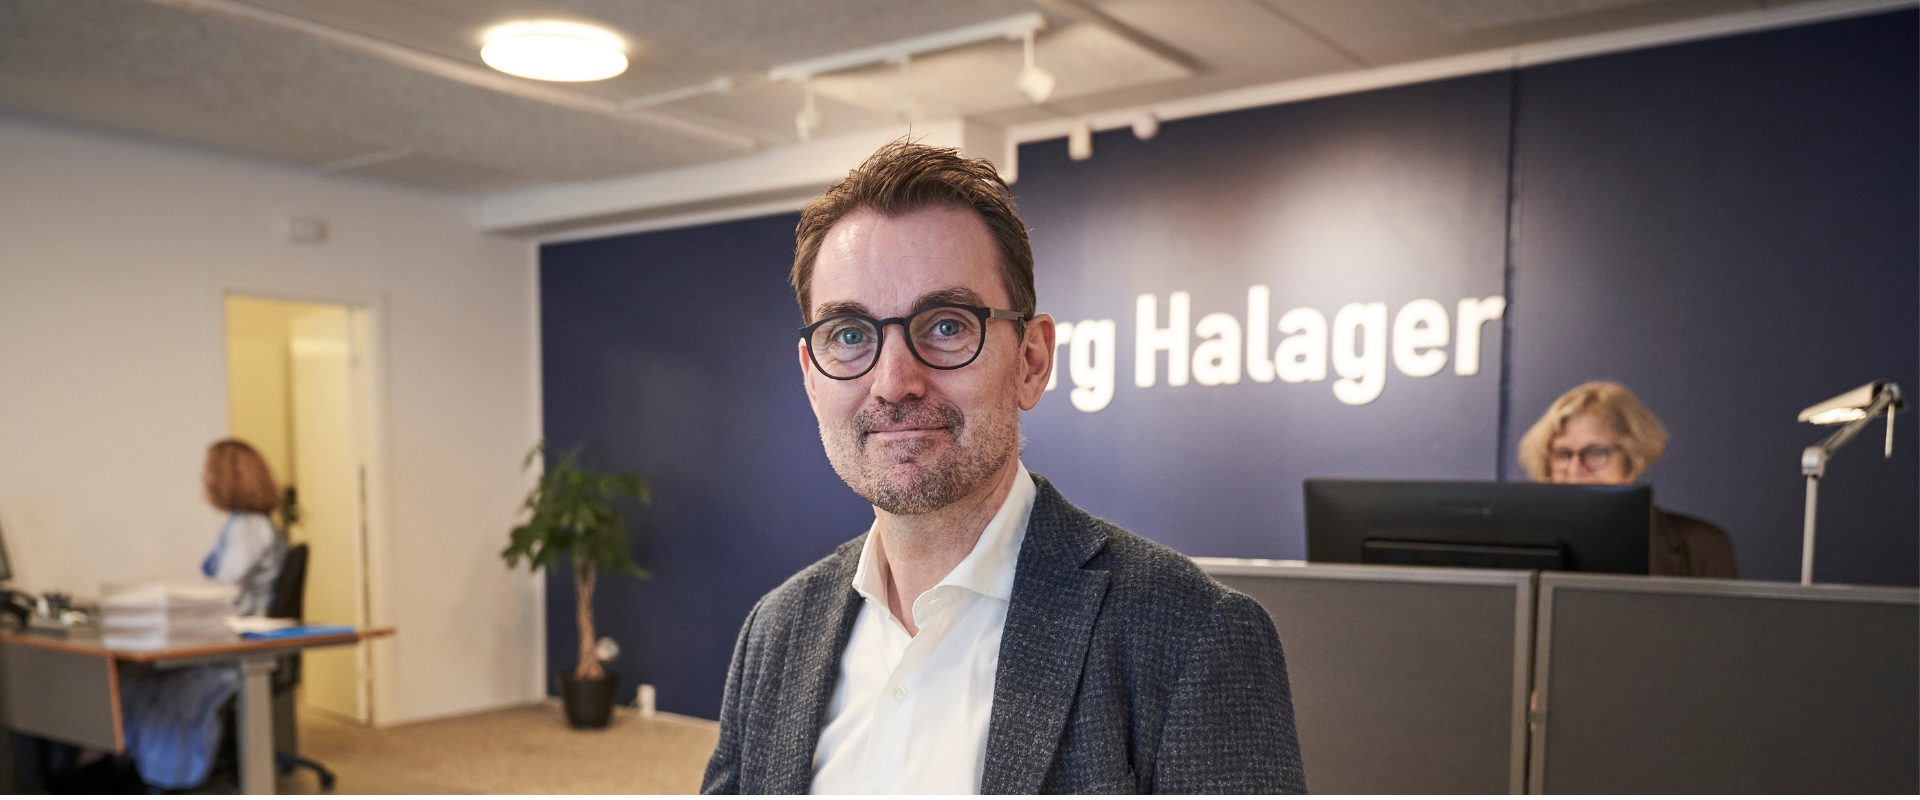 Kristian Halager på kontoret i Hornslet Syddjurs